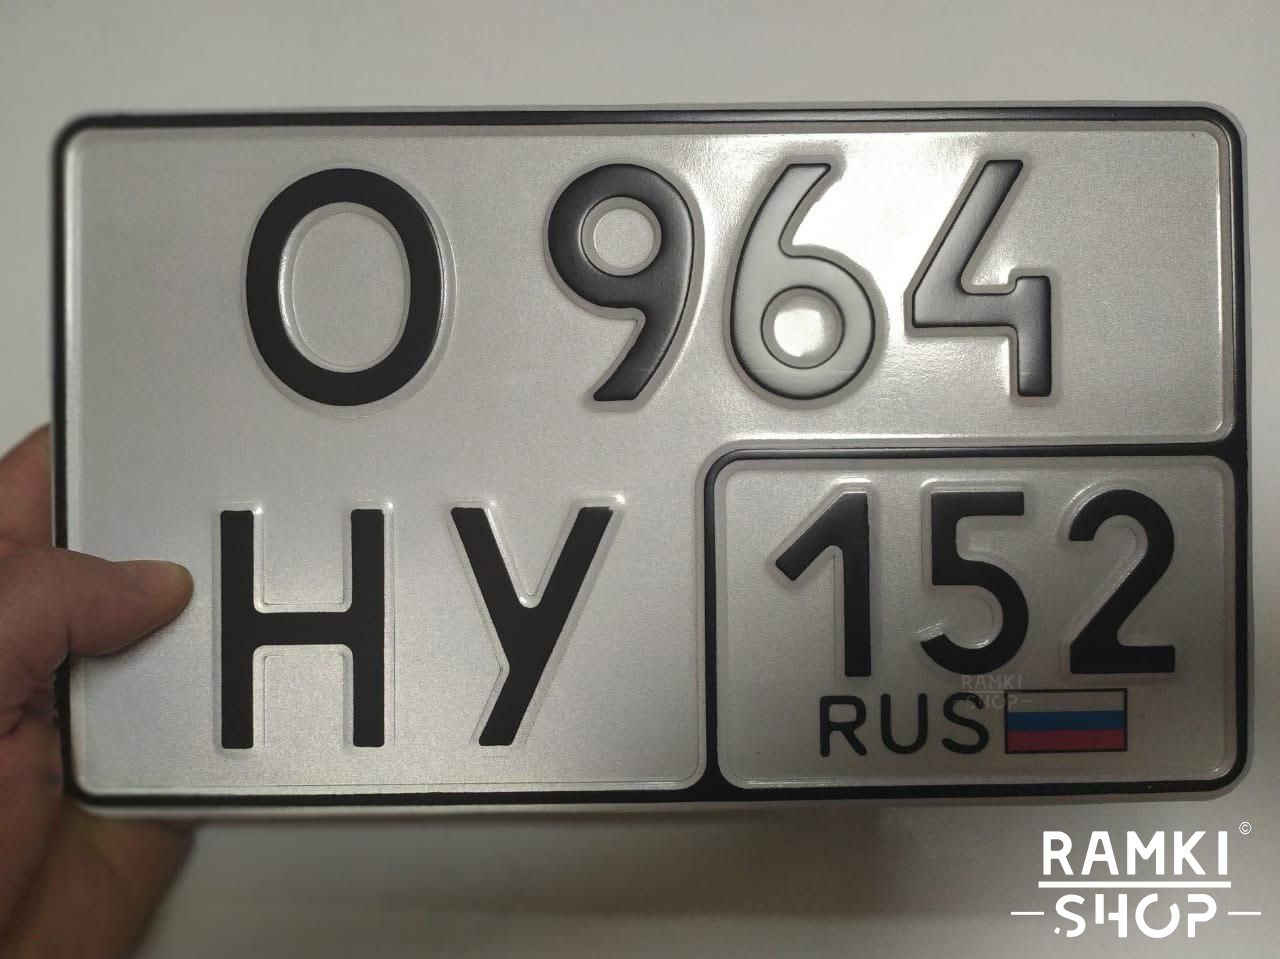 Рф номер москва. Номера автомобильные а666уф. Номерной знак Тип 1а Москва. Квадратный номерной знак. Автомобильные номера квадратные.